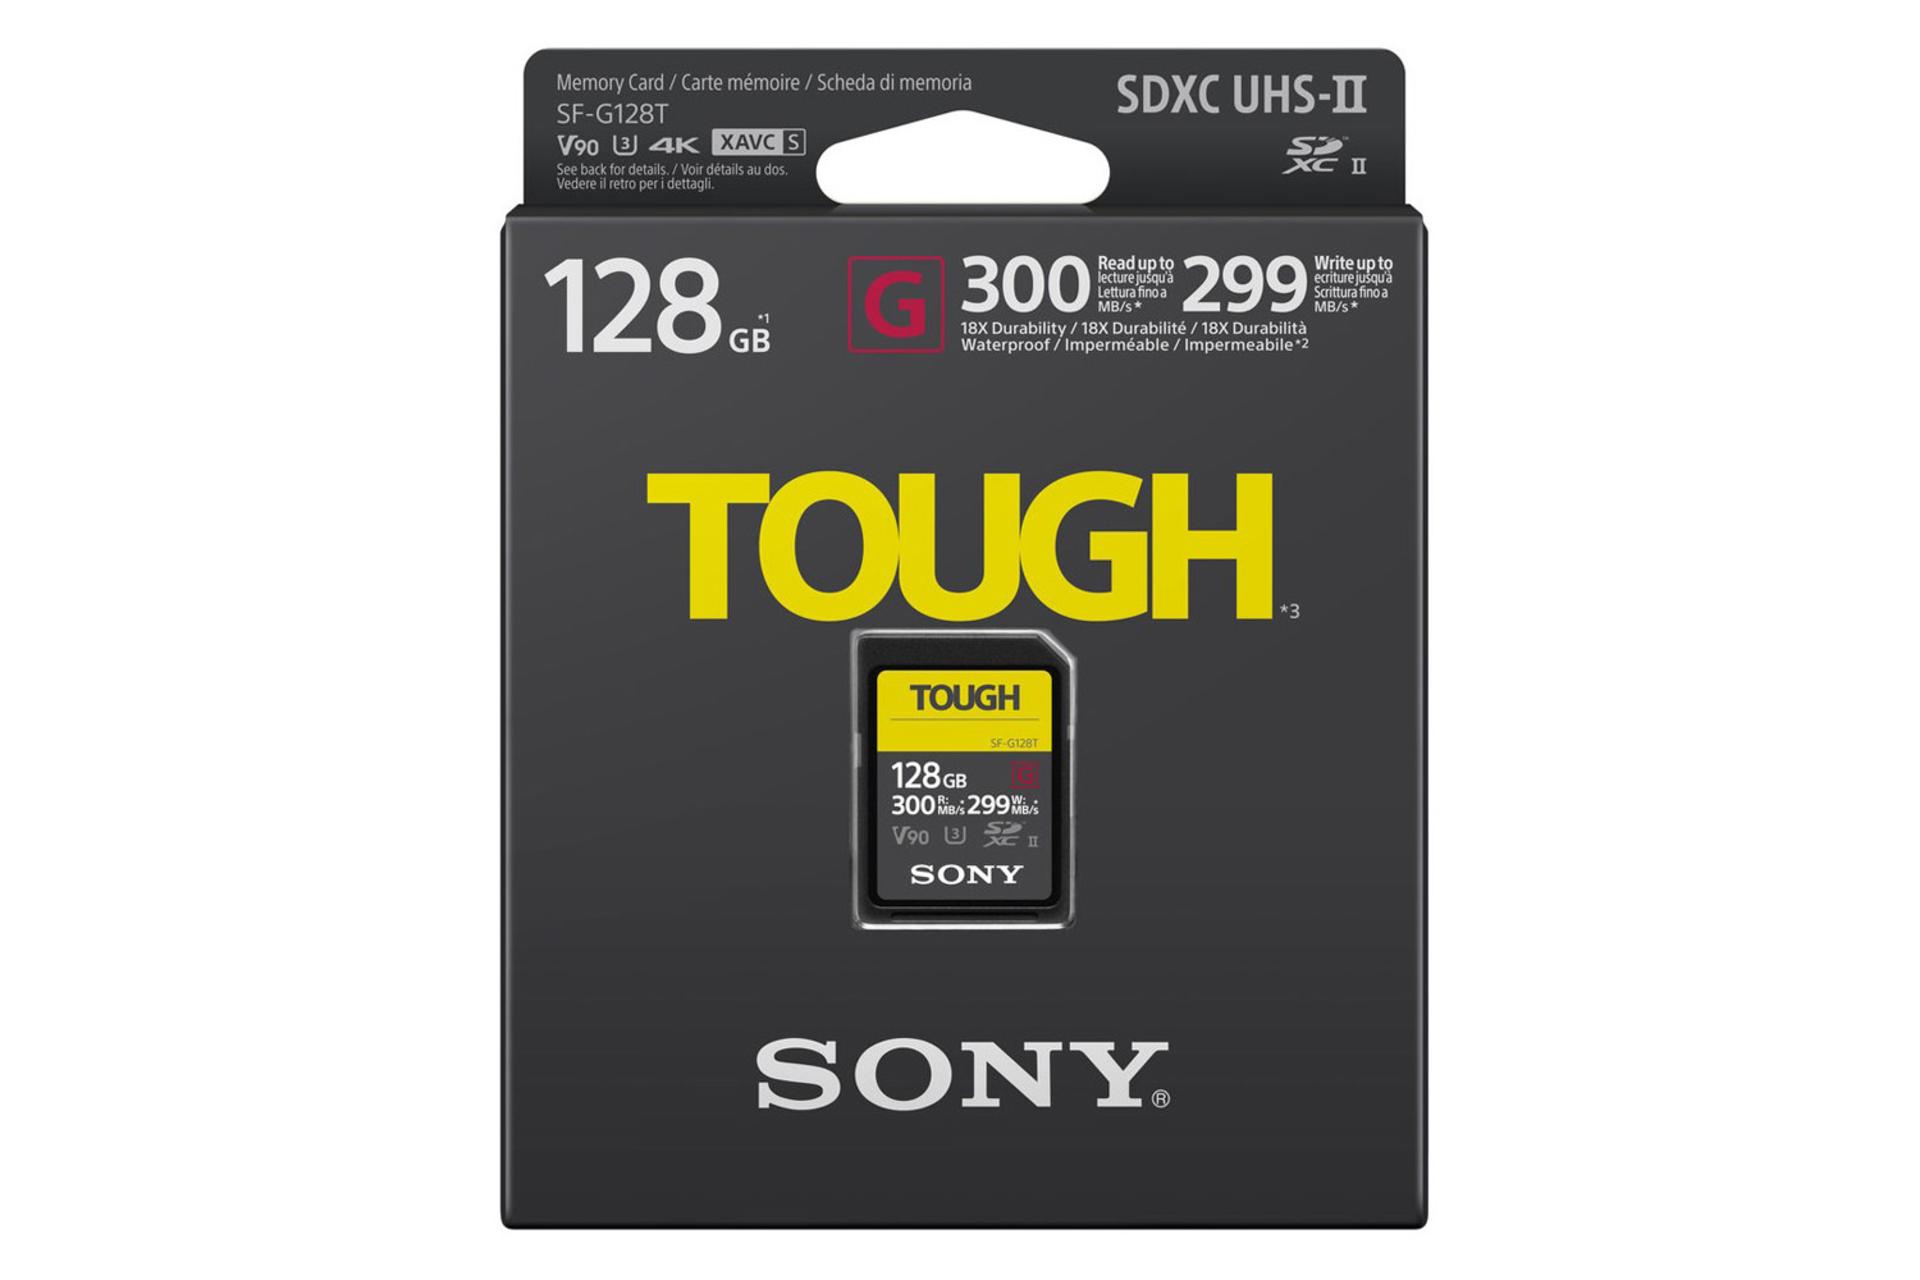 جعبه کارت حافظه سونی SDXC با ظرفیت 128 گیگابایت مدل TOUGH V90 کلاس 10